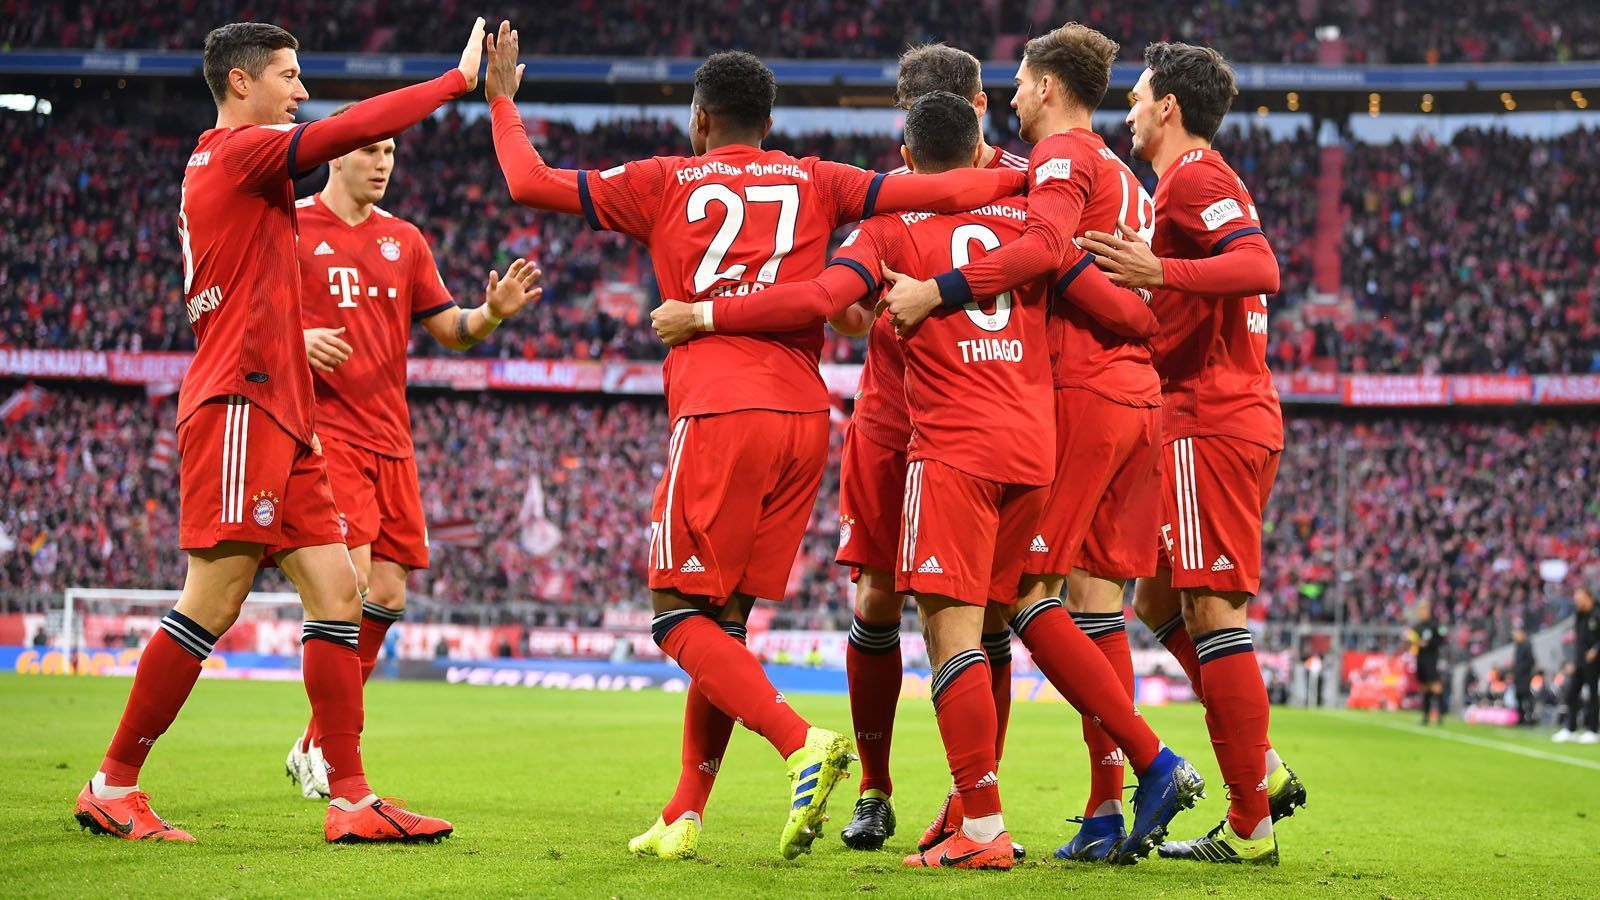 
                <strong>Platz 5: FC Bayern München</strong><br>
                Natürlich ist der FC Bayern München das deutsche Team mit dem höchsten Gehaltsausgaben. Der Rekordmeister gab 276 Millionen Euro für seine Stars aus, damit gingen 47 Prozent der erwirtschafteten Einnahmen des FC Bayern für Personalkosten drauf.
              